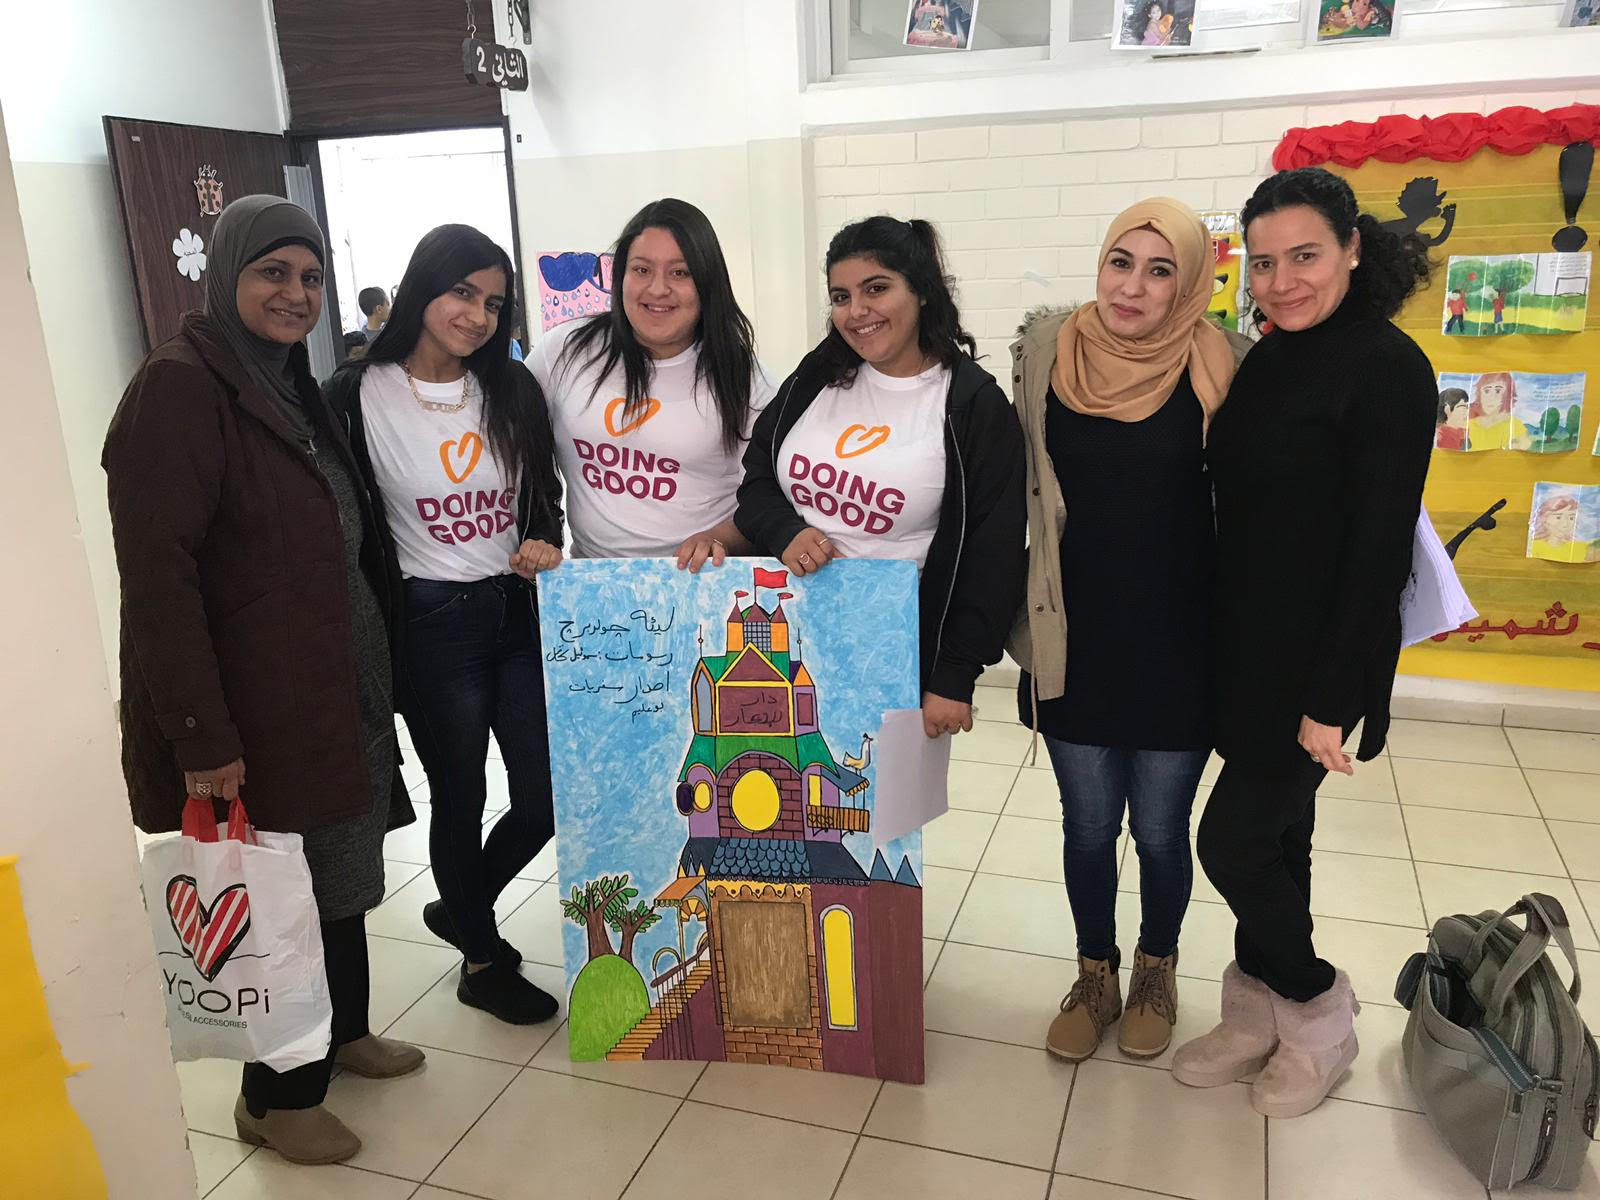 روح العطاء والتطوع للخير في يوم الأعمال الخيرية في مدرسة يافا الشاملة